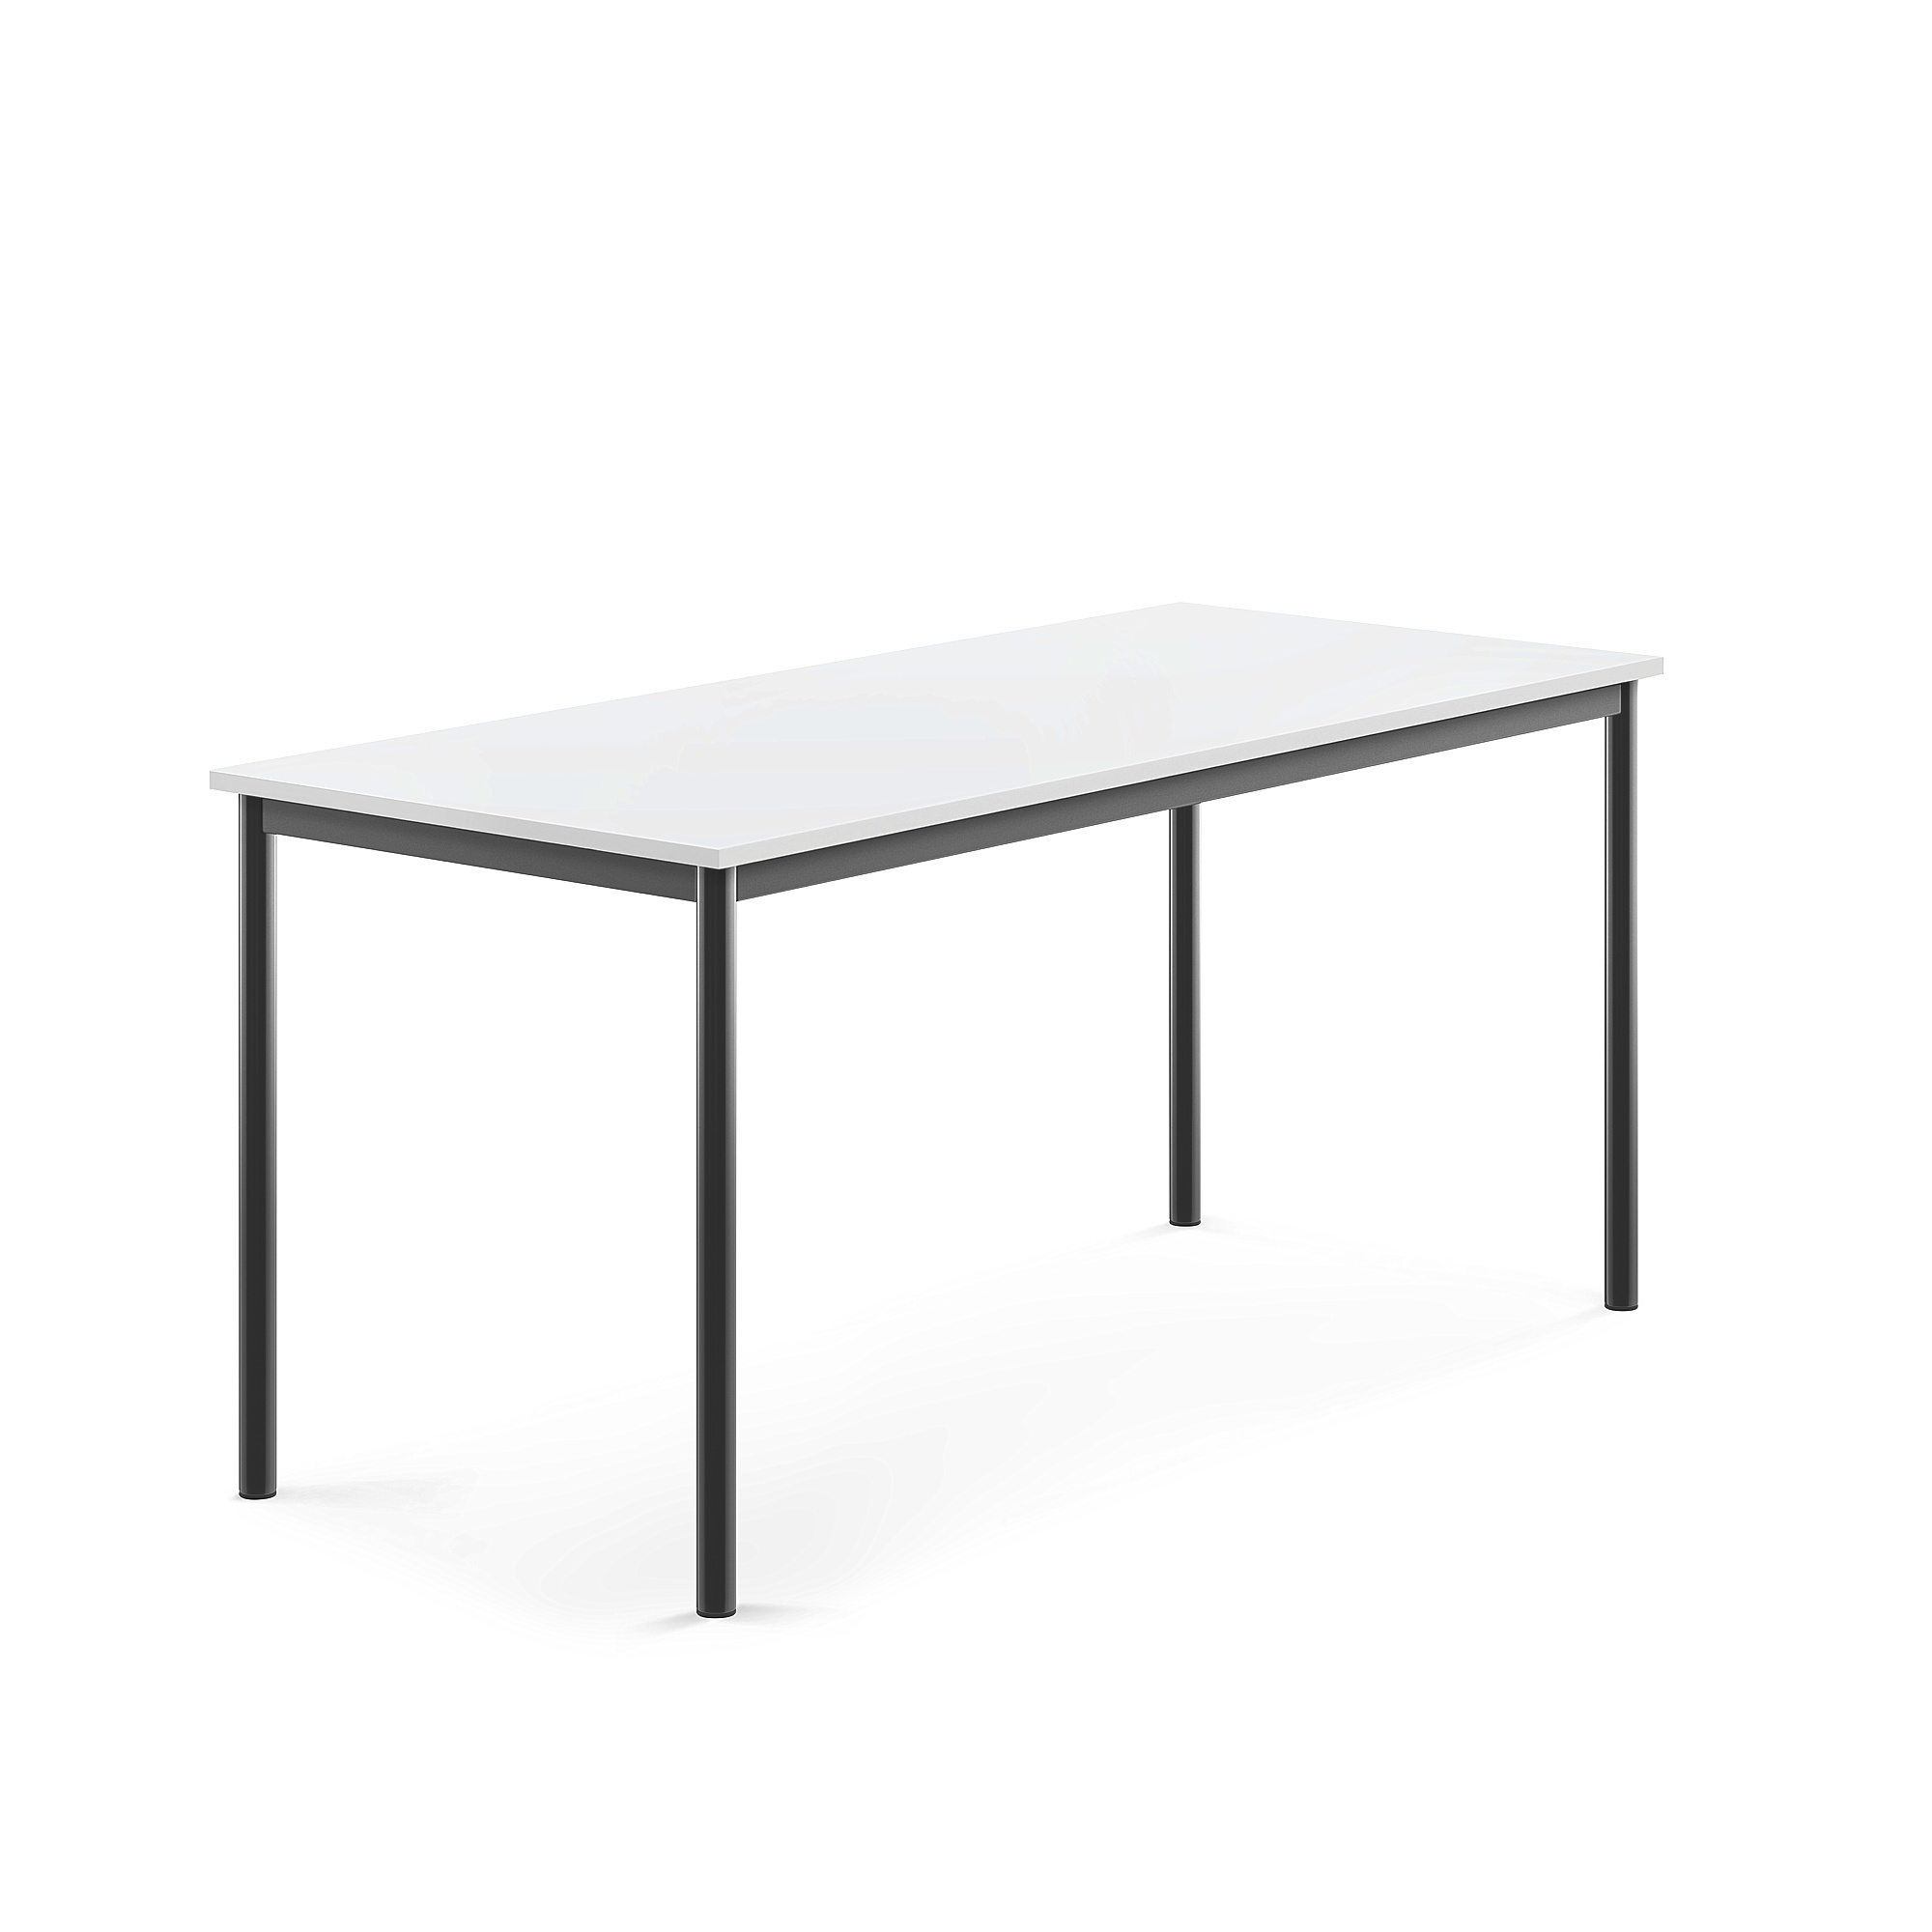 Stůl SONITUS, 1600x700x720 mm, antracitově šedé nohy, HPL deska tlumící hluk, bílá